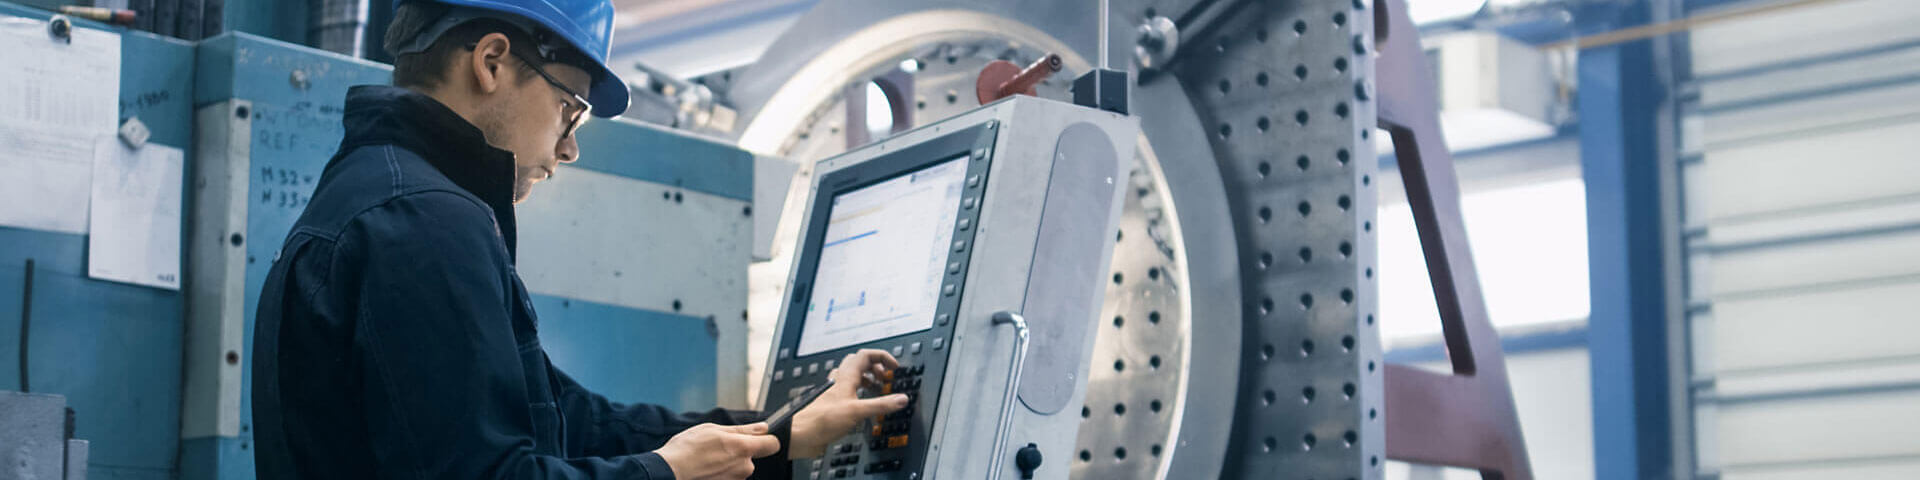 Fabrikarbeiter programmiert eine CNC Fräsmaschine mit einem Tablet-Computer